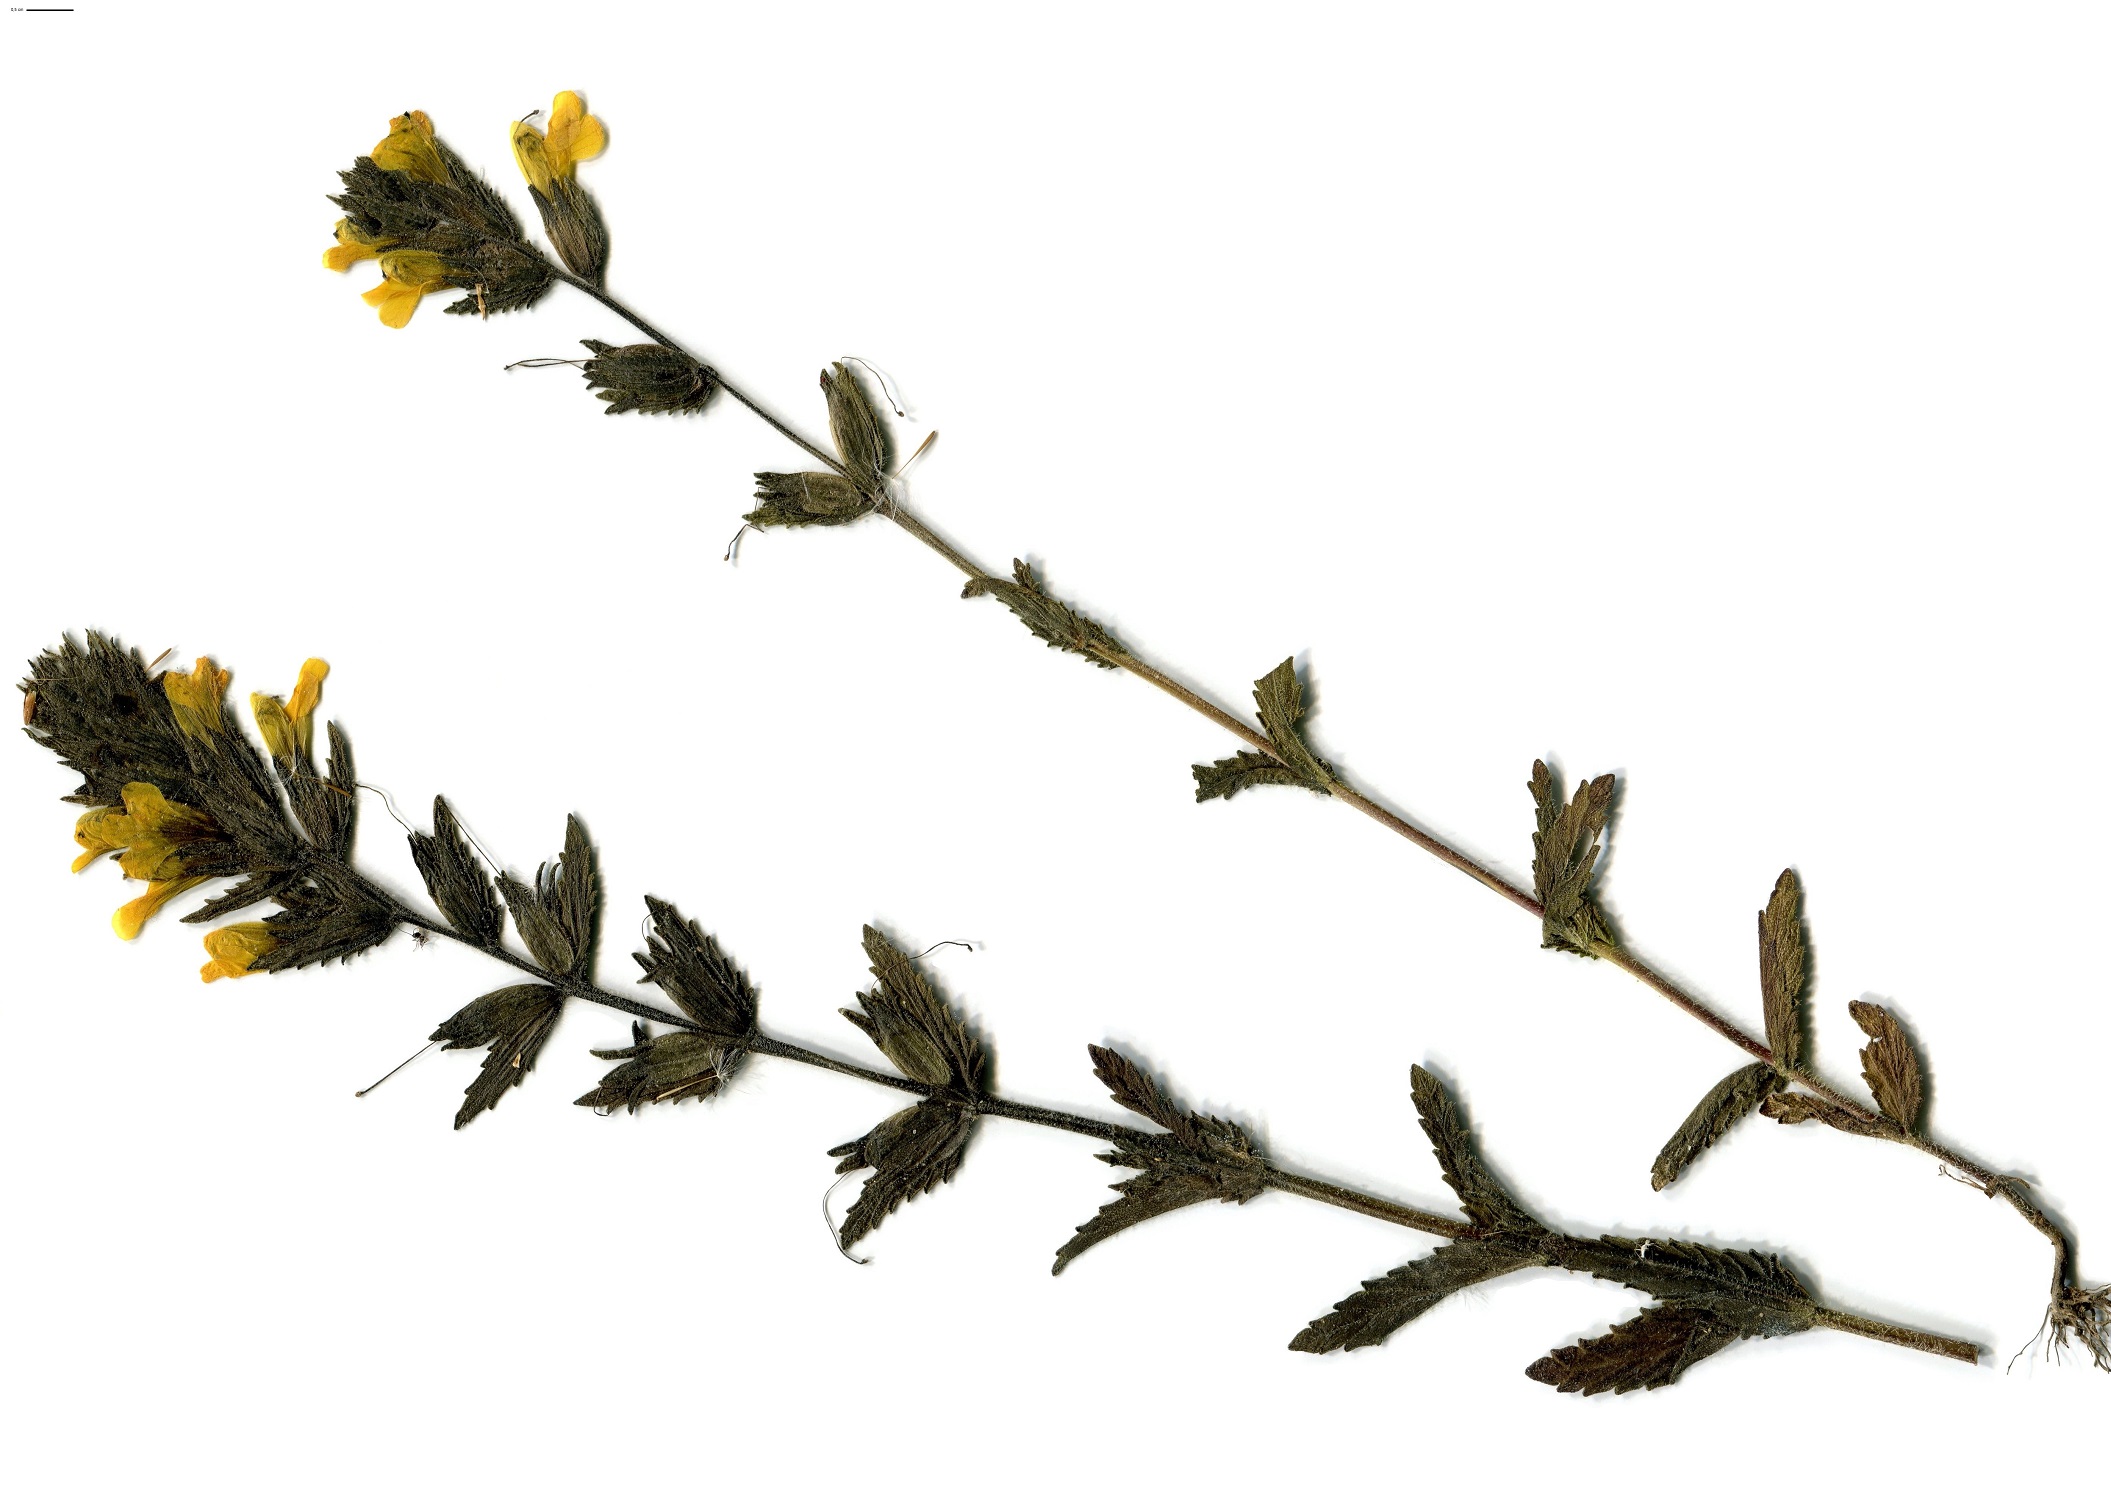 Parentucellia viscosa (Orobanchaceae)